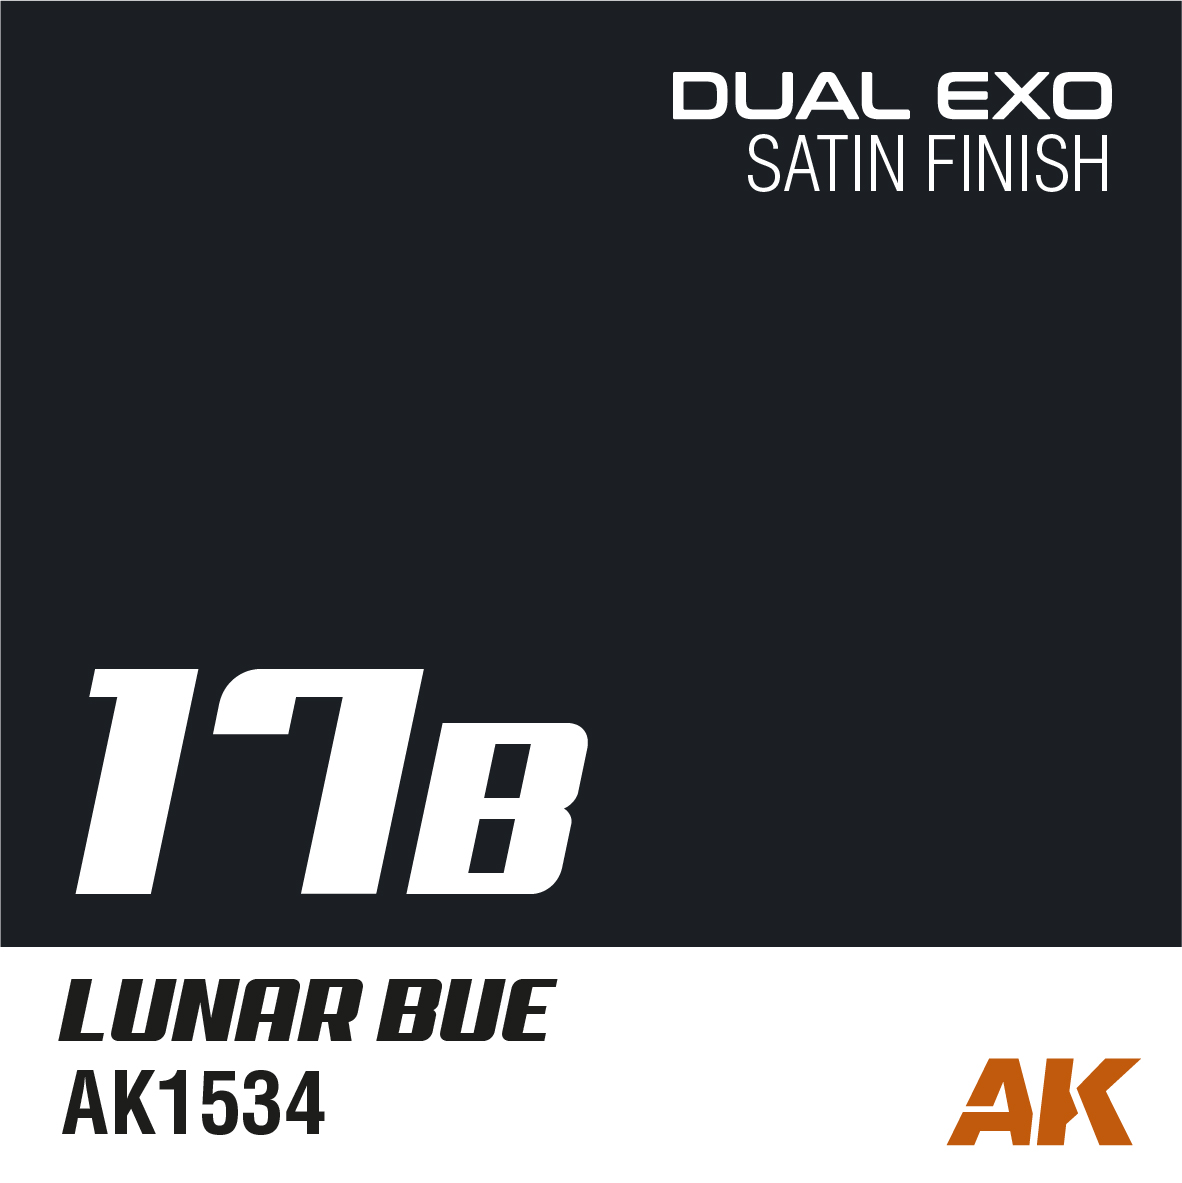 Dual Exo 17B - Lunar Blue